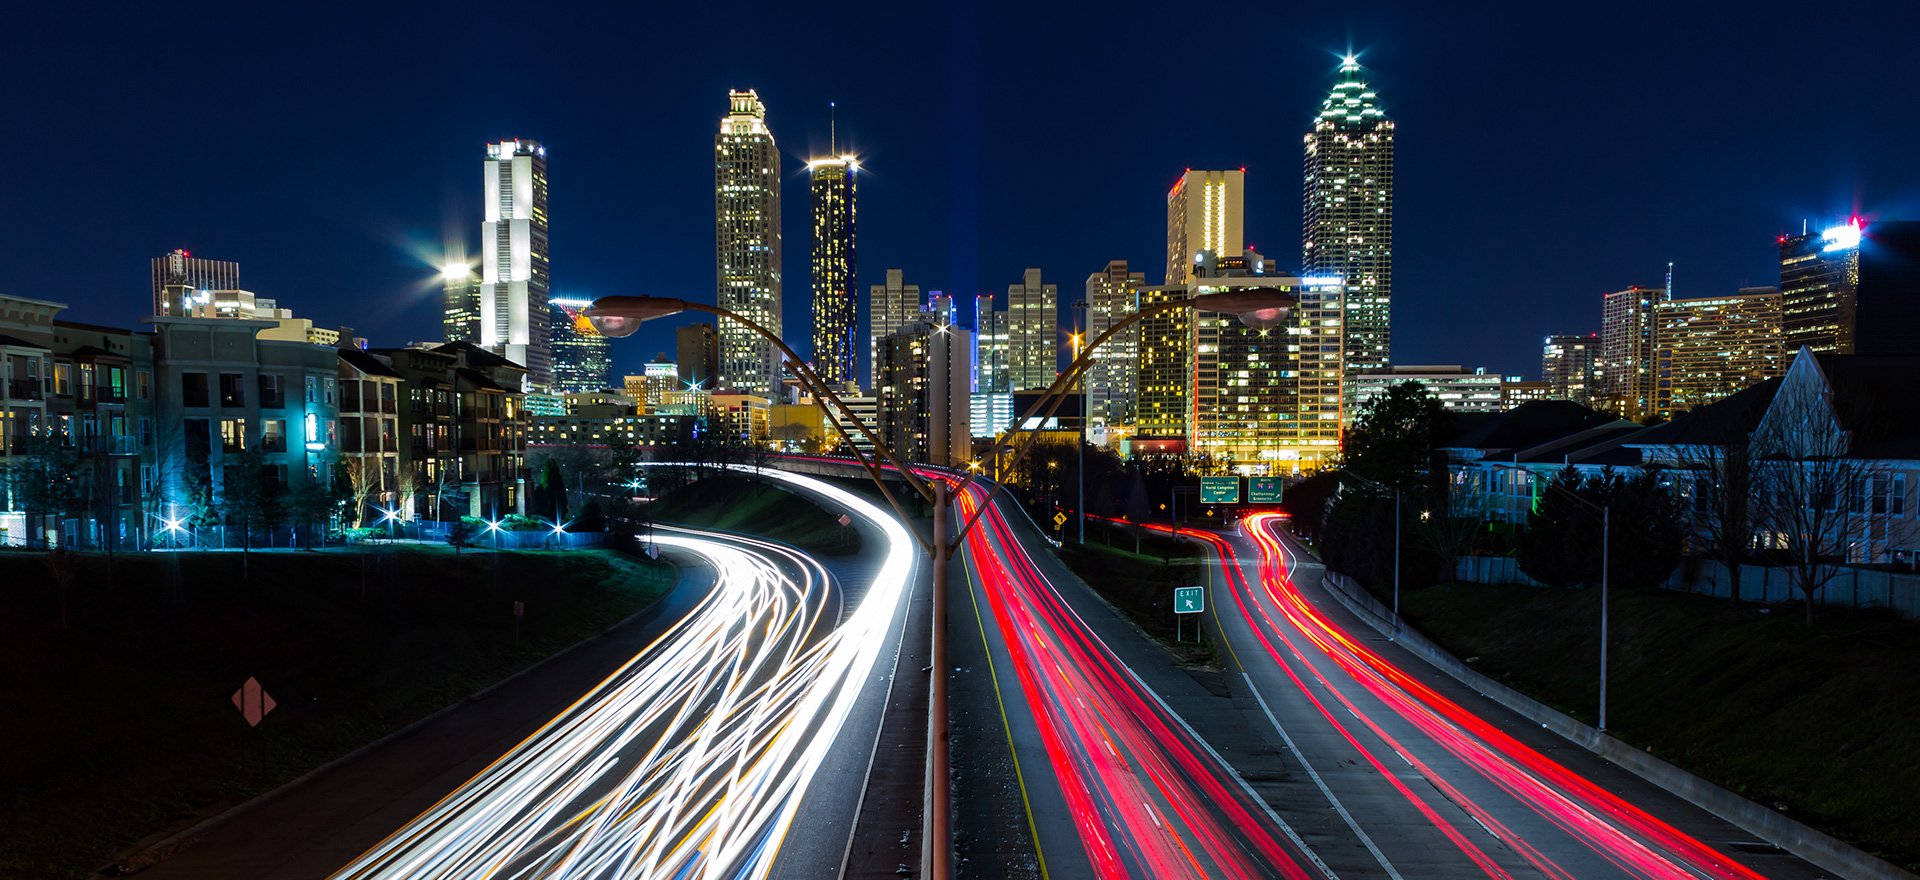 View of Atlanta at night